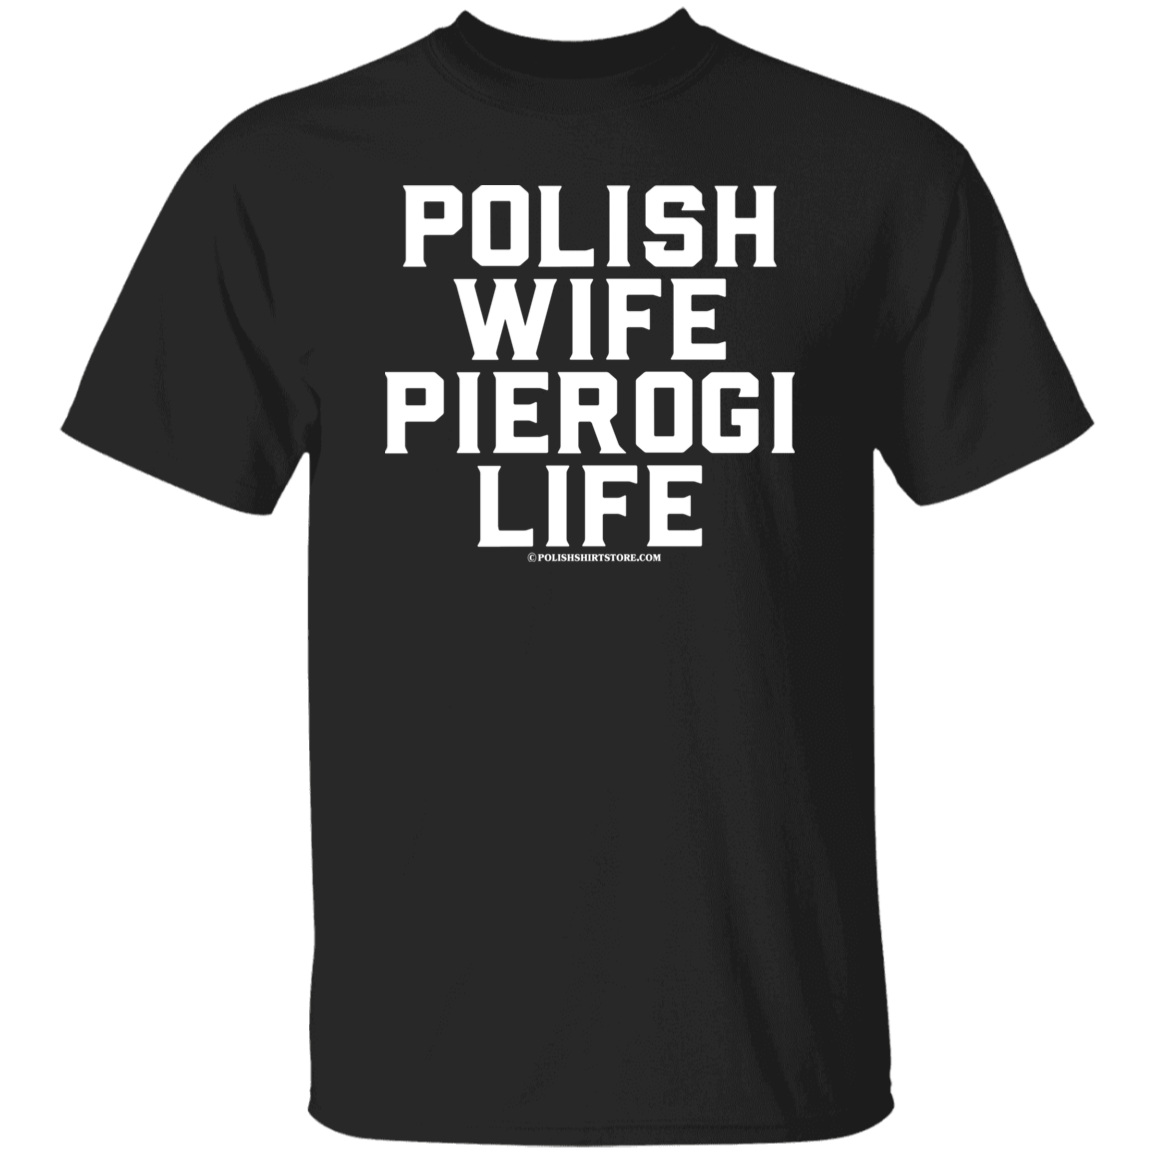 Polish Wife Pierogi Life Apparel CustomCat G500 5.3 oz. T-Shirt Black S